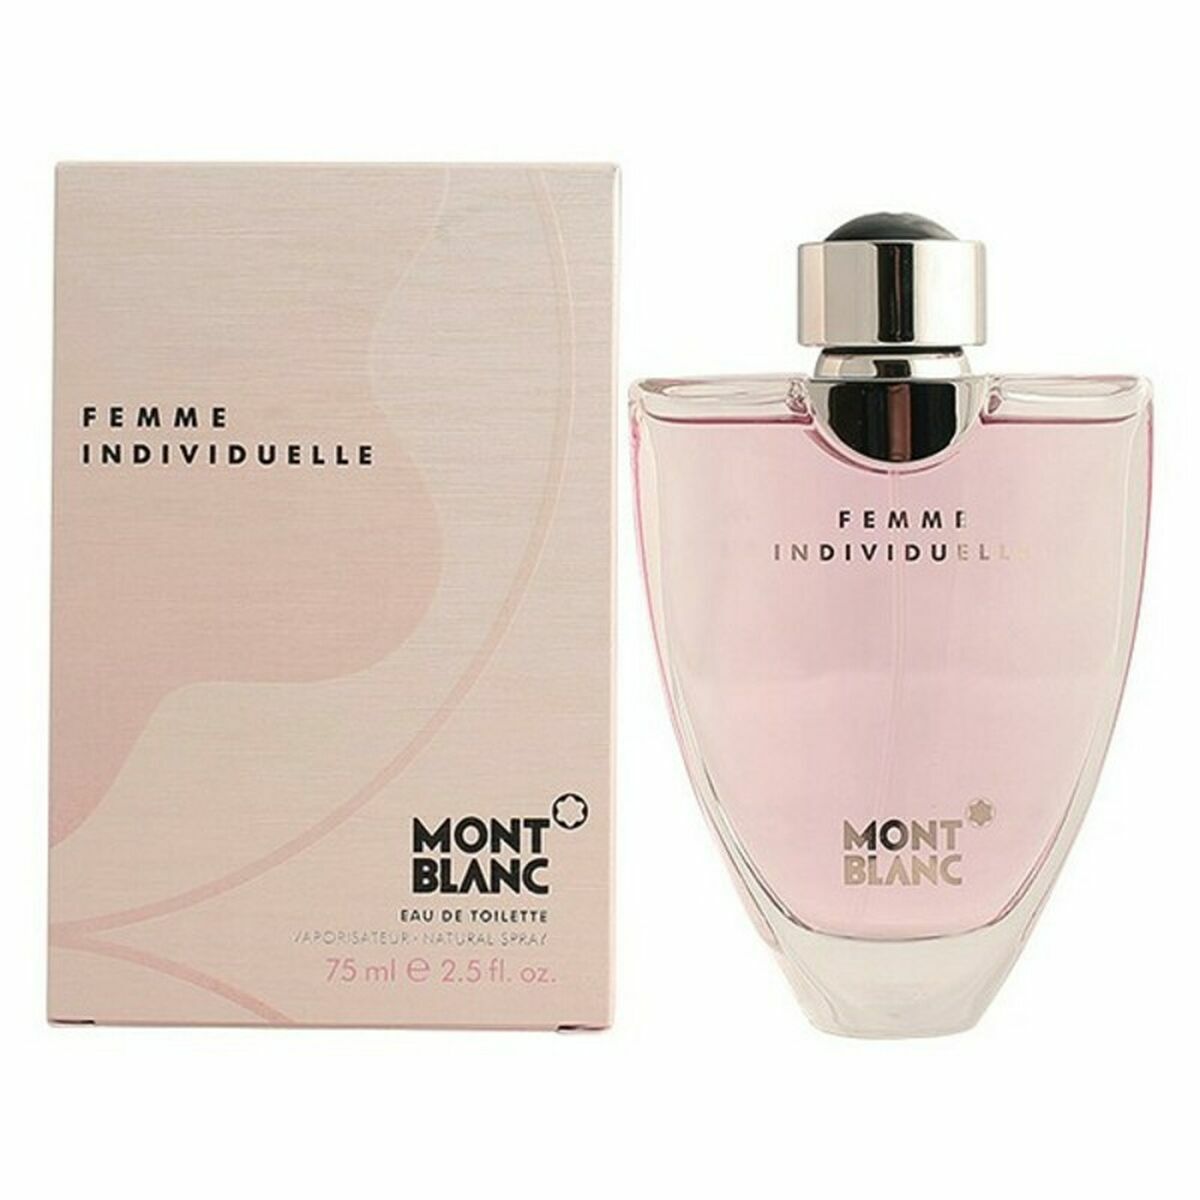 Parfum Femme Montblanc EDT 75 ml Femme Individuelle